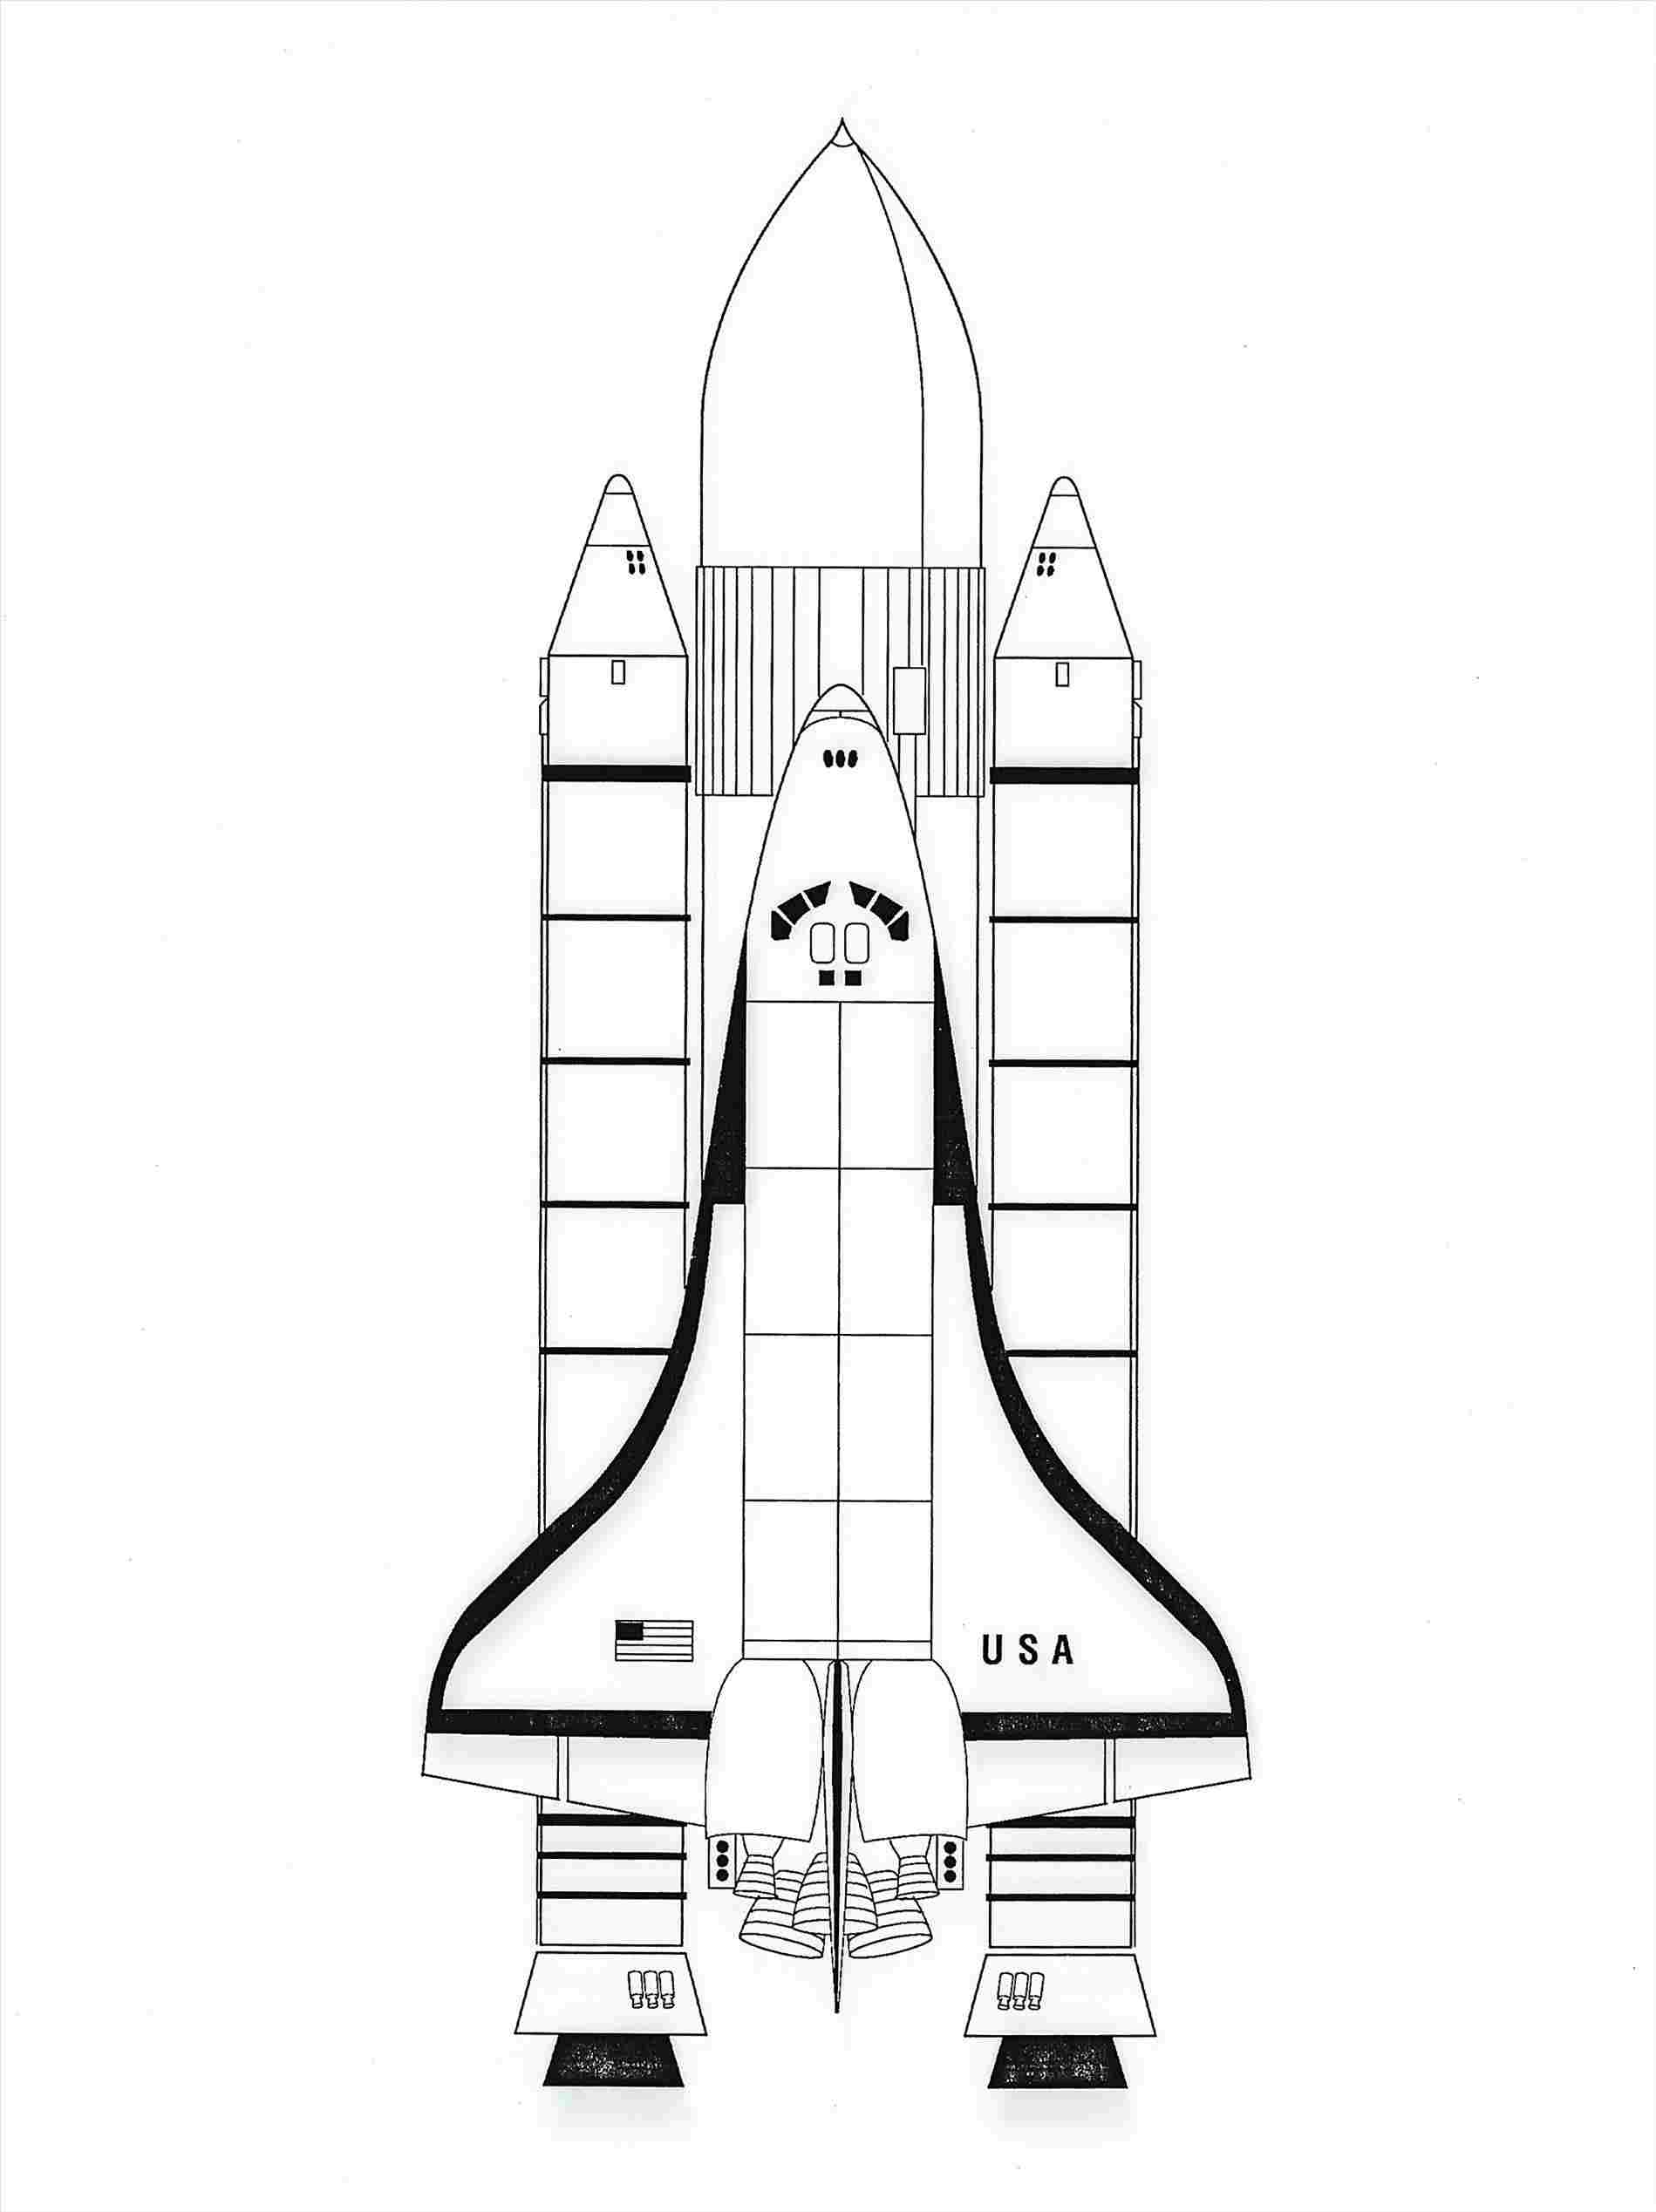 rocketship coloring page